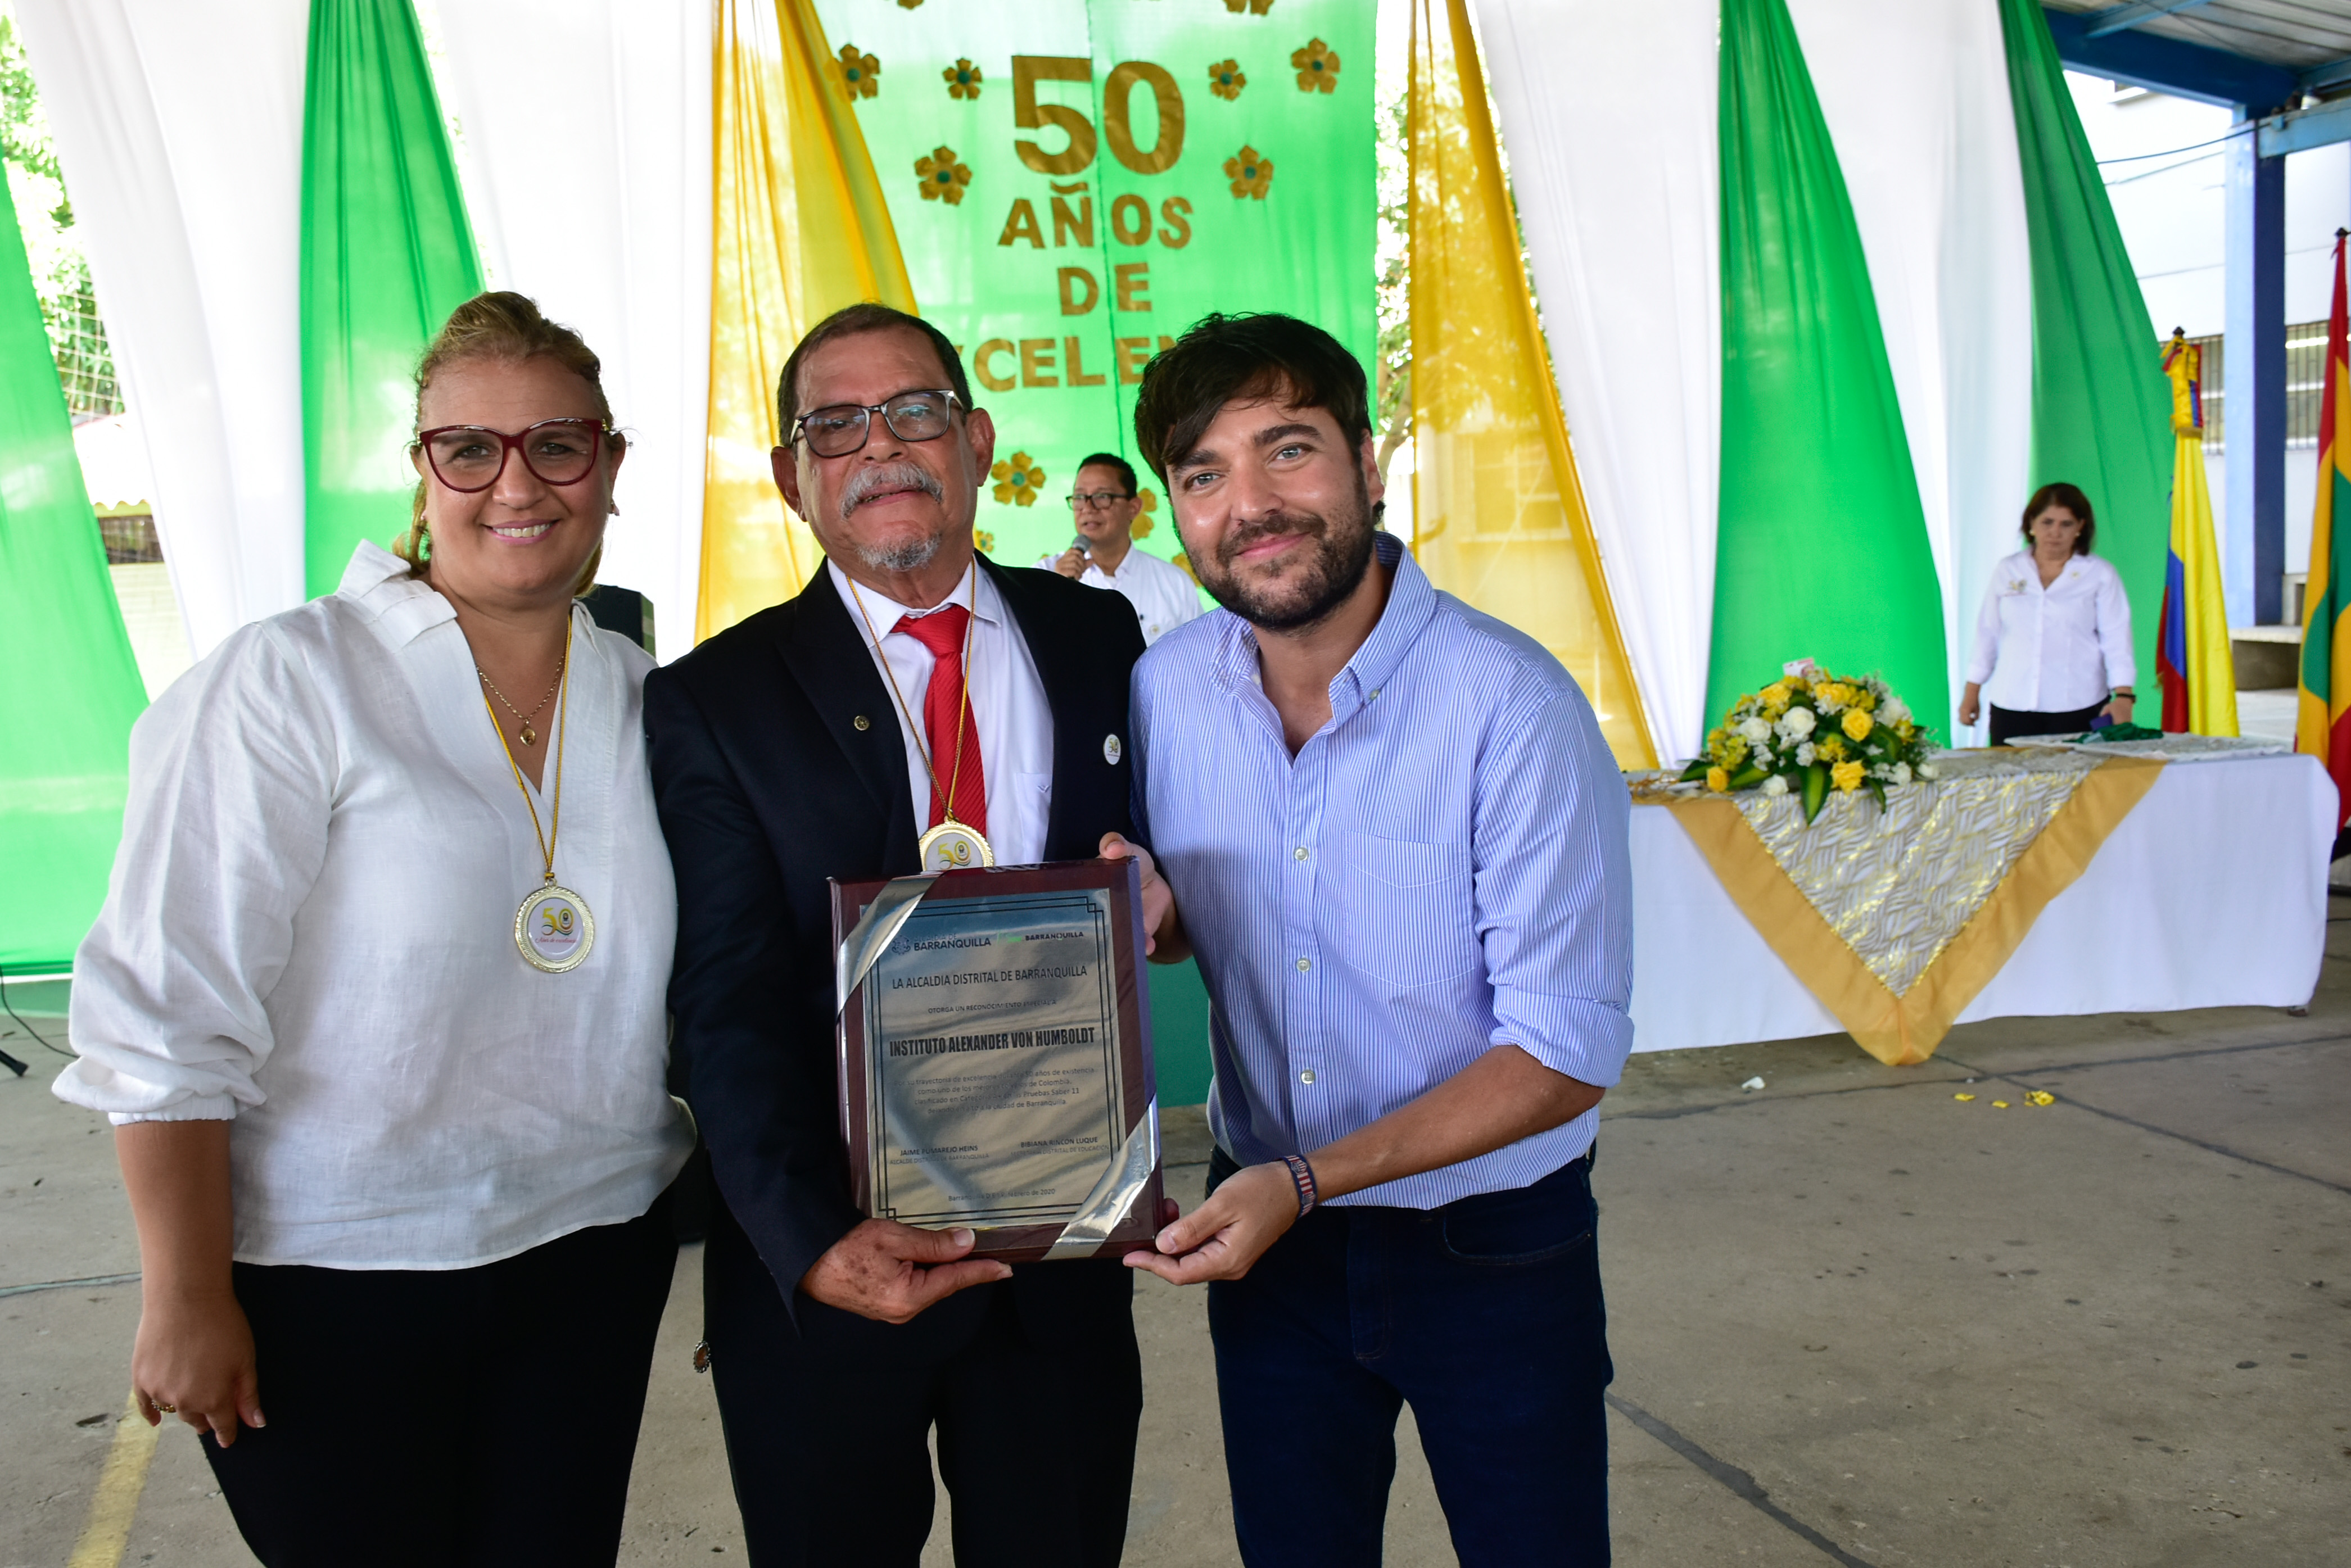 “Celebramos los 50 años de la Humboldt resaltando su compromiso con la calidad educativa en Barranquilla”: alcalde Pumarejo